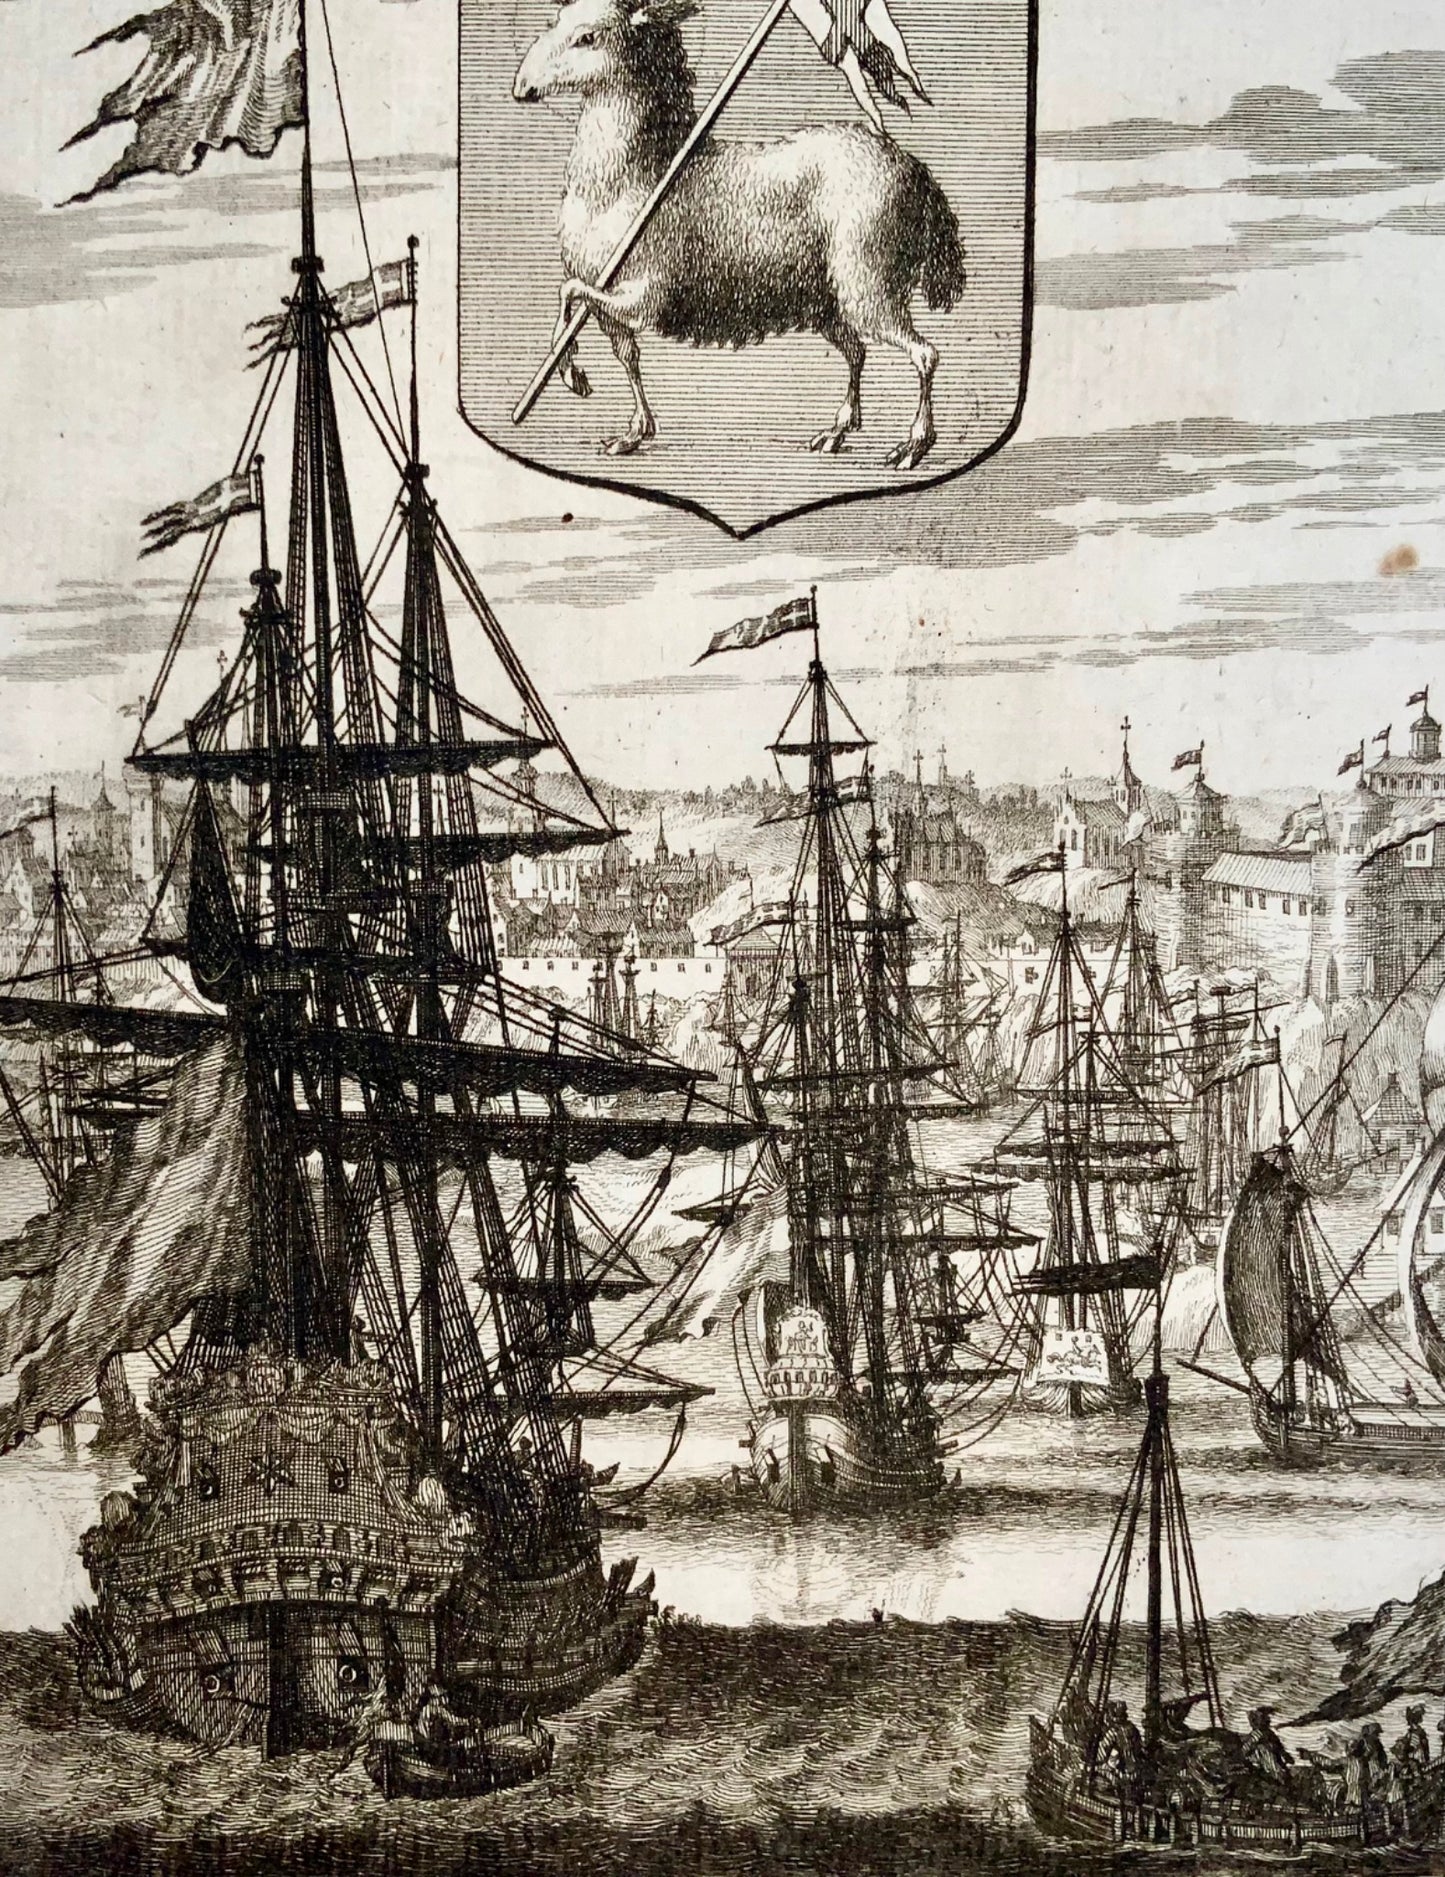 1712 Aveelen, navires dans le vieux port de Visby, armoiries de Gotland, maritime